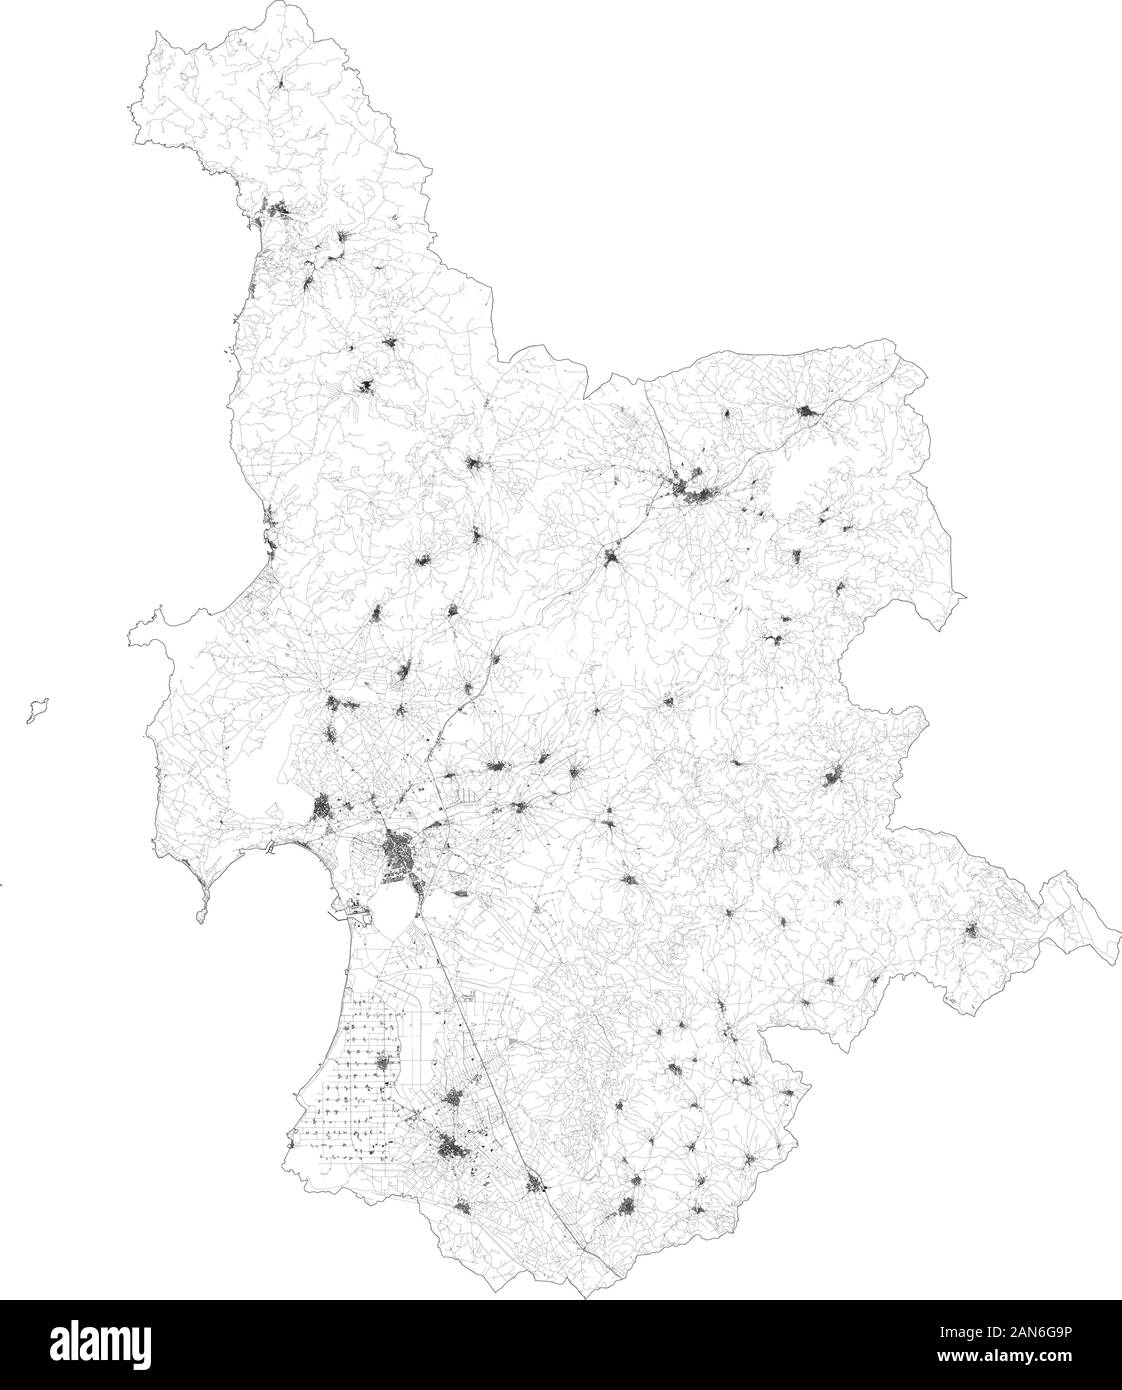 Sat-Karte der Provinz von Oristano Städte und Straßen, Gebäude und Straßen der Umgebung. Region Sardinien, Italien. Sardinien Stock Vektor